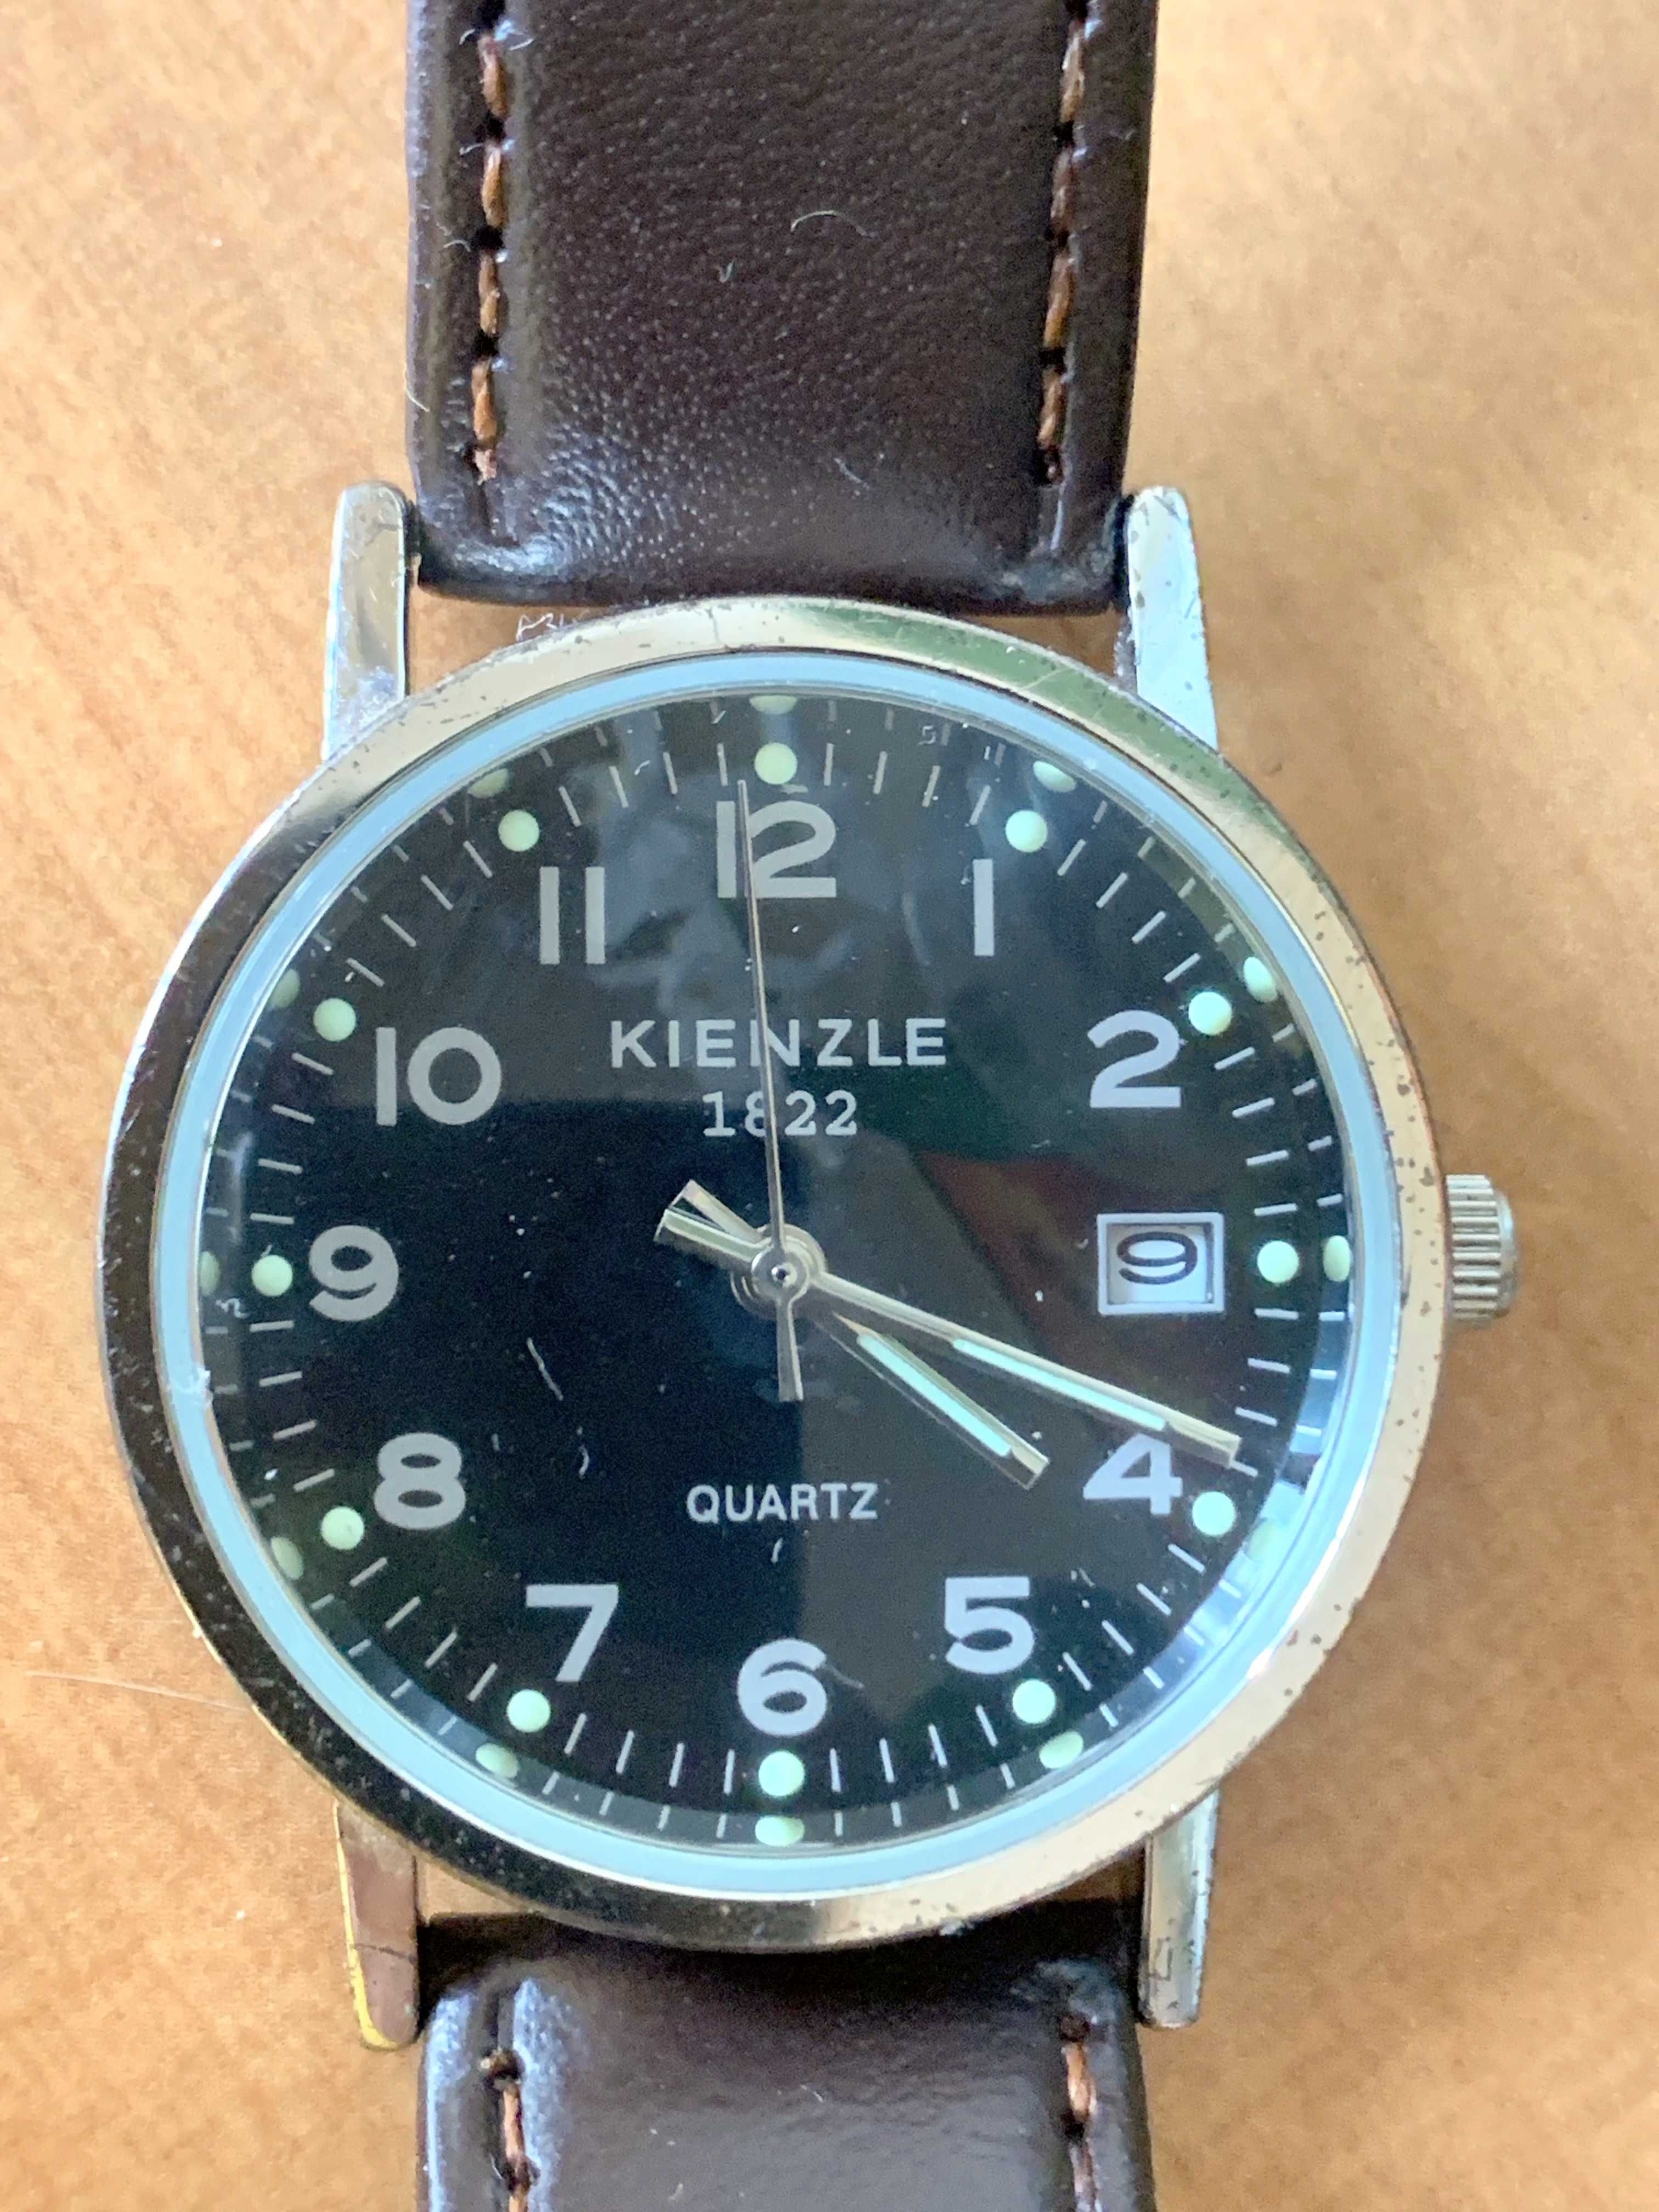 Zegarek Kienzle, kwarcowy z czarną tarczą.